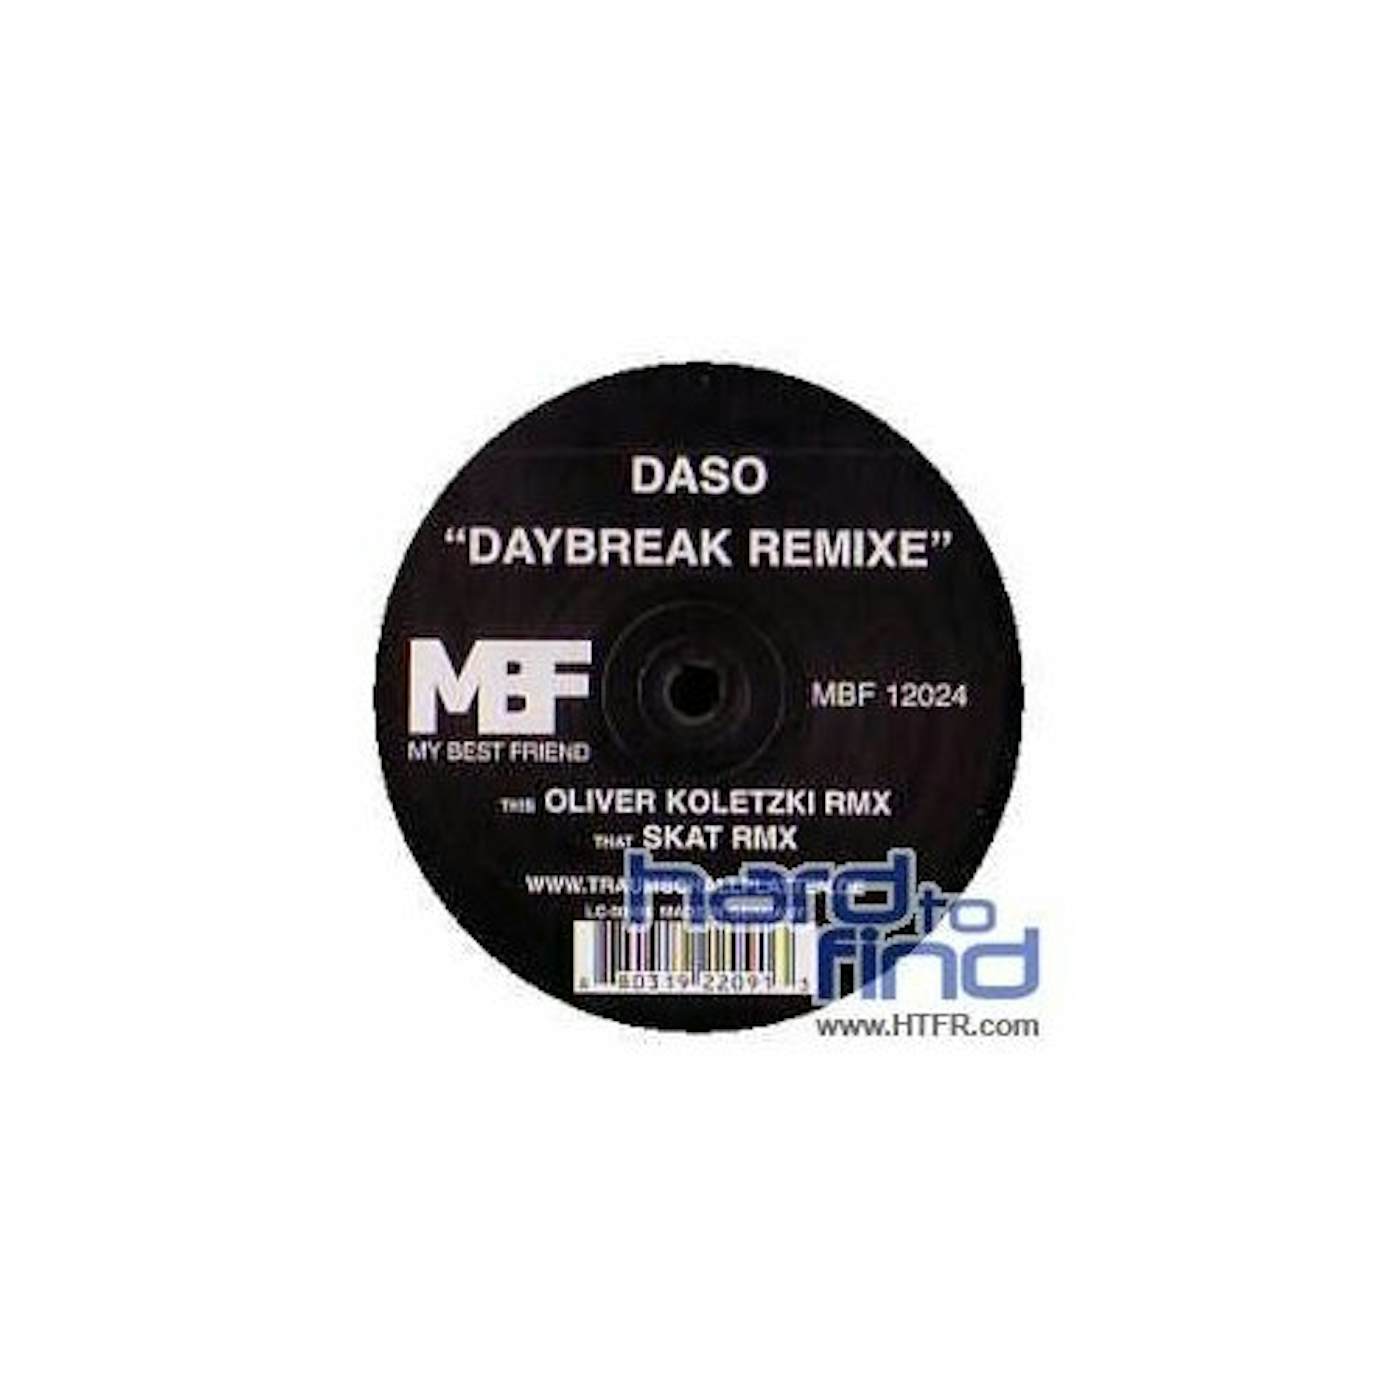 Daso DAYBREAK REMIXE Vinyl Record